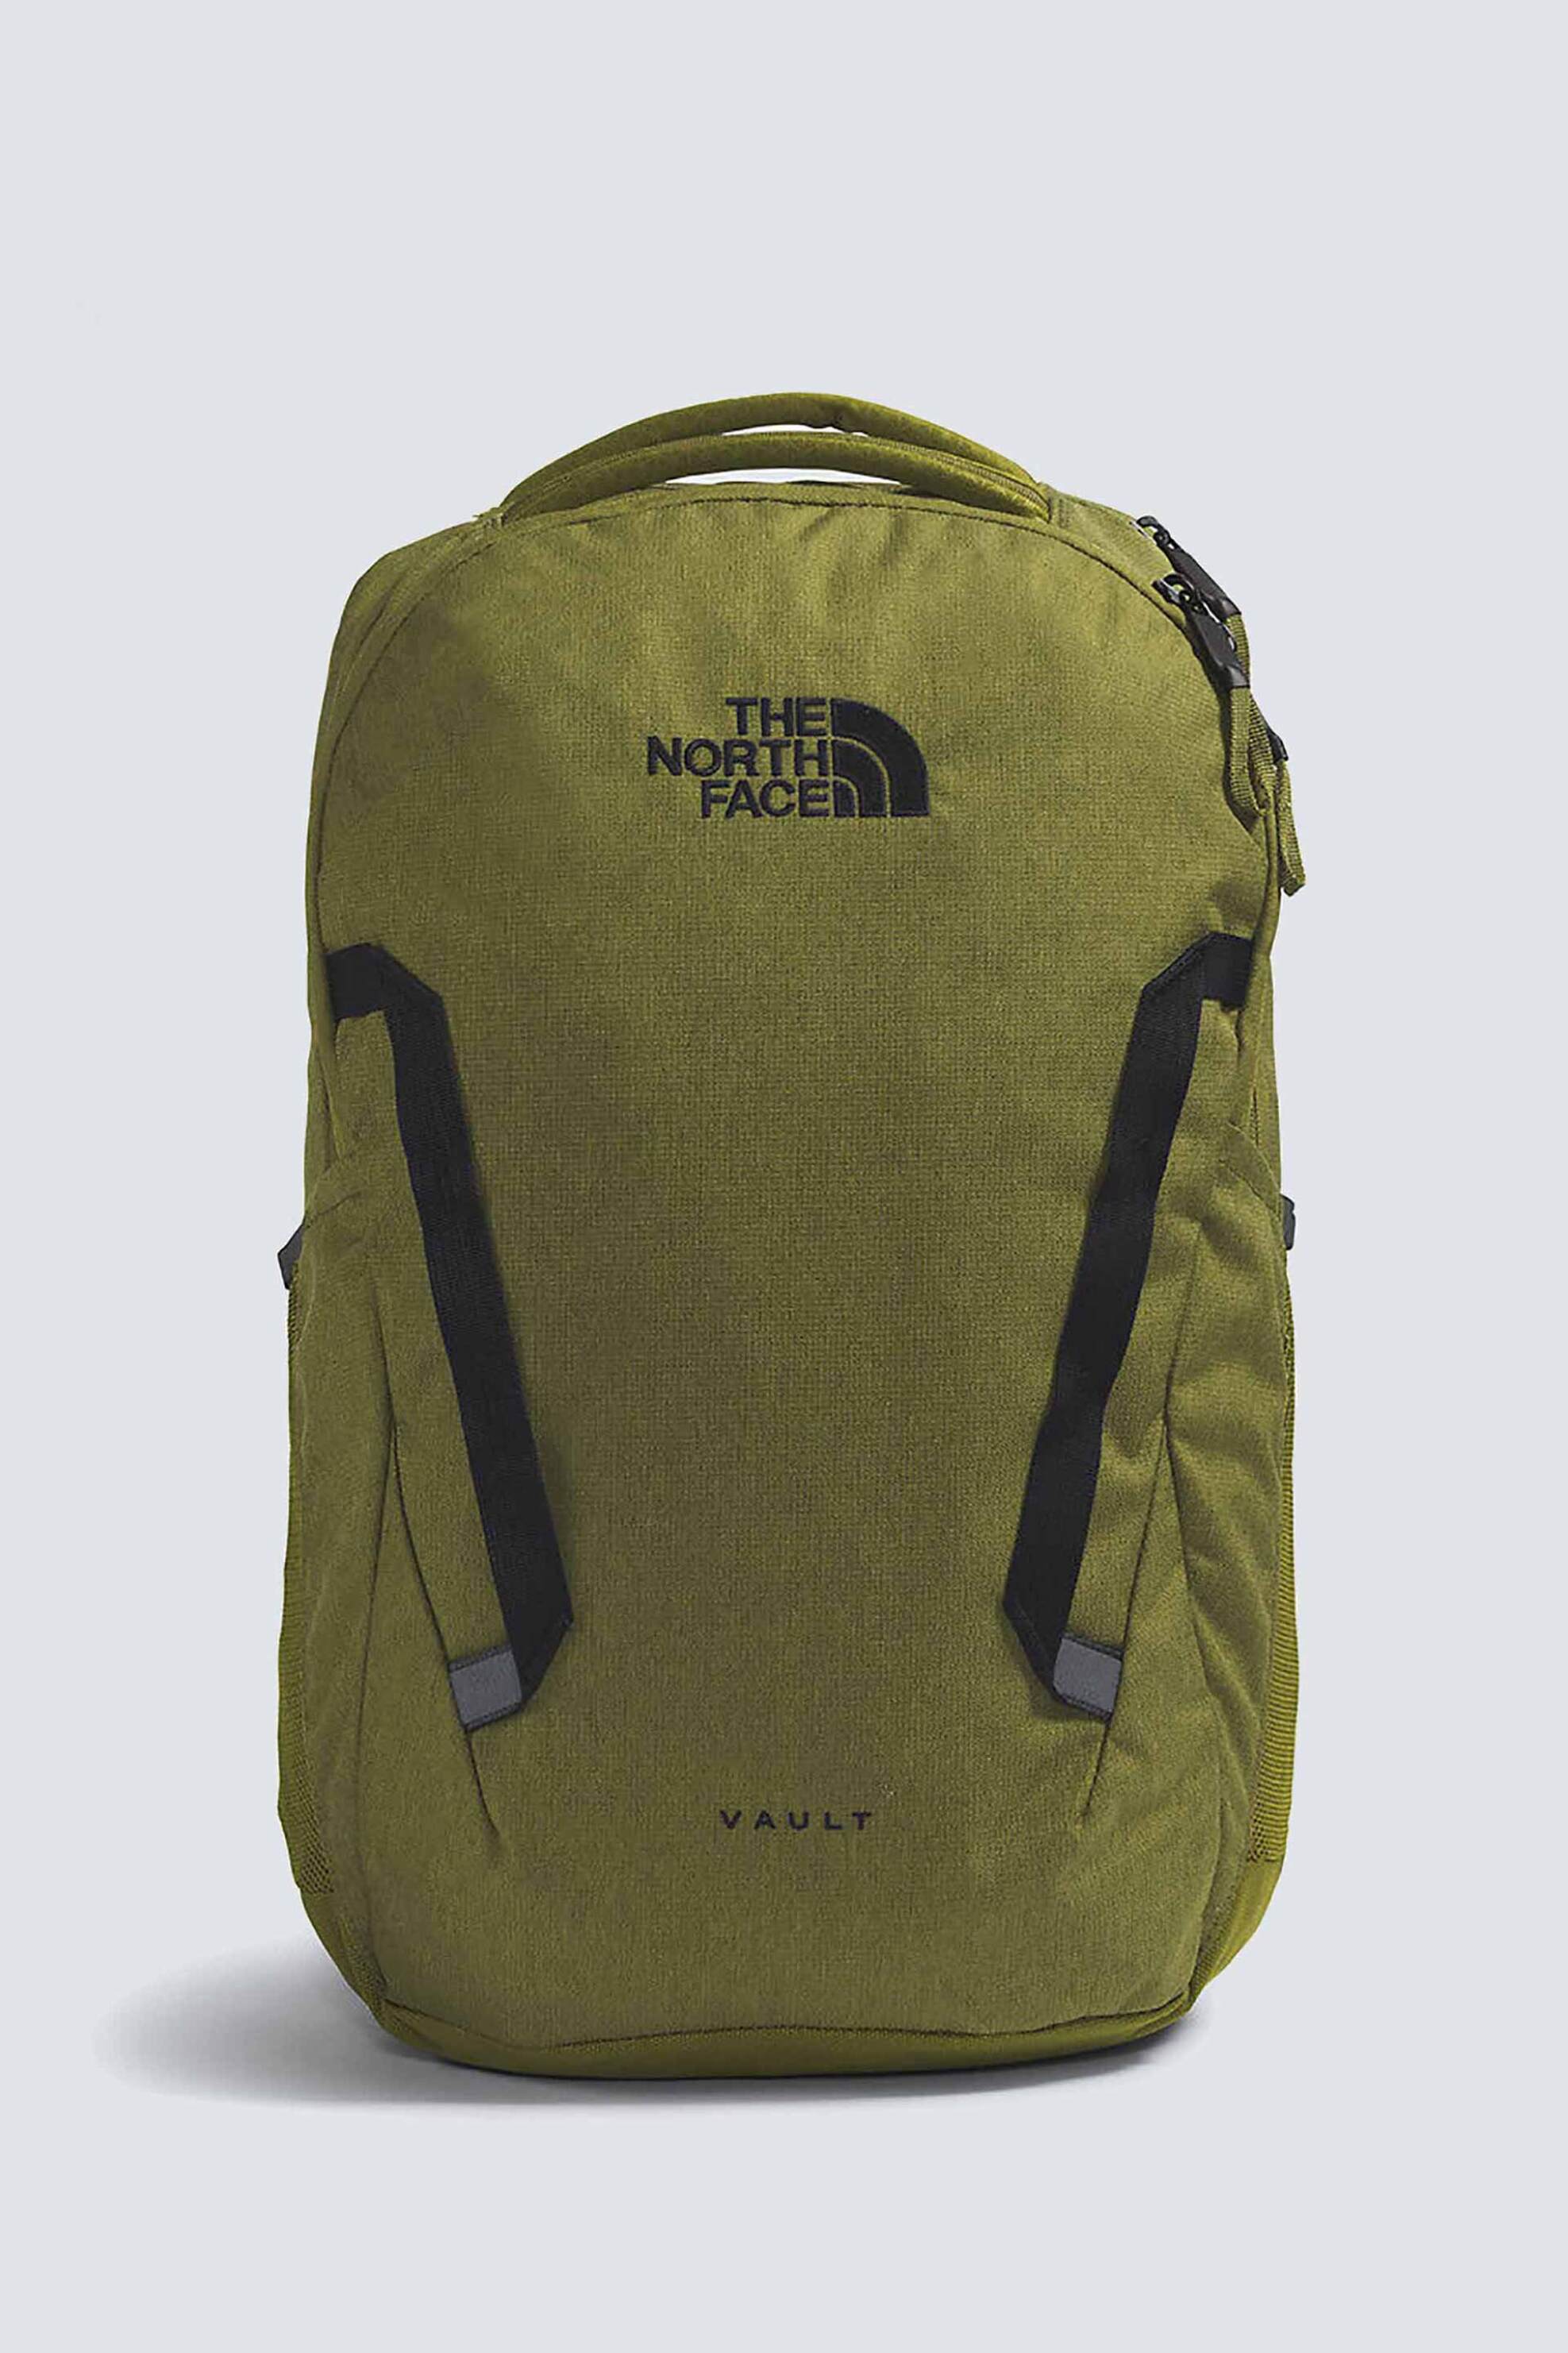 Ανδρική Μόδα > Ανδρικές Τσάντες > Ανδρικά Σακίδια & Backpacks The North Face unisex backpack μονόχρωμο με κεντημένο contrast λογότυπο "Vault" - NF0A3VY2XI51 Λαδί